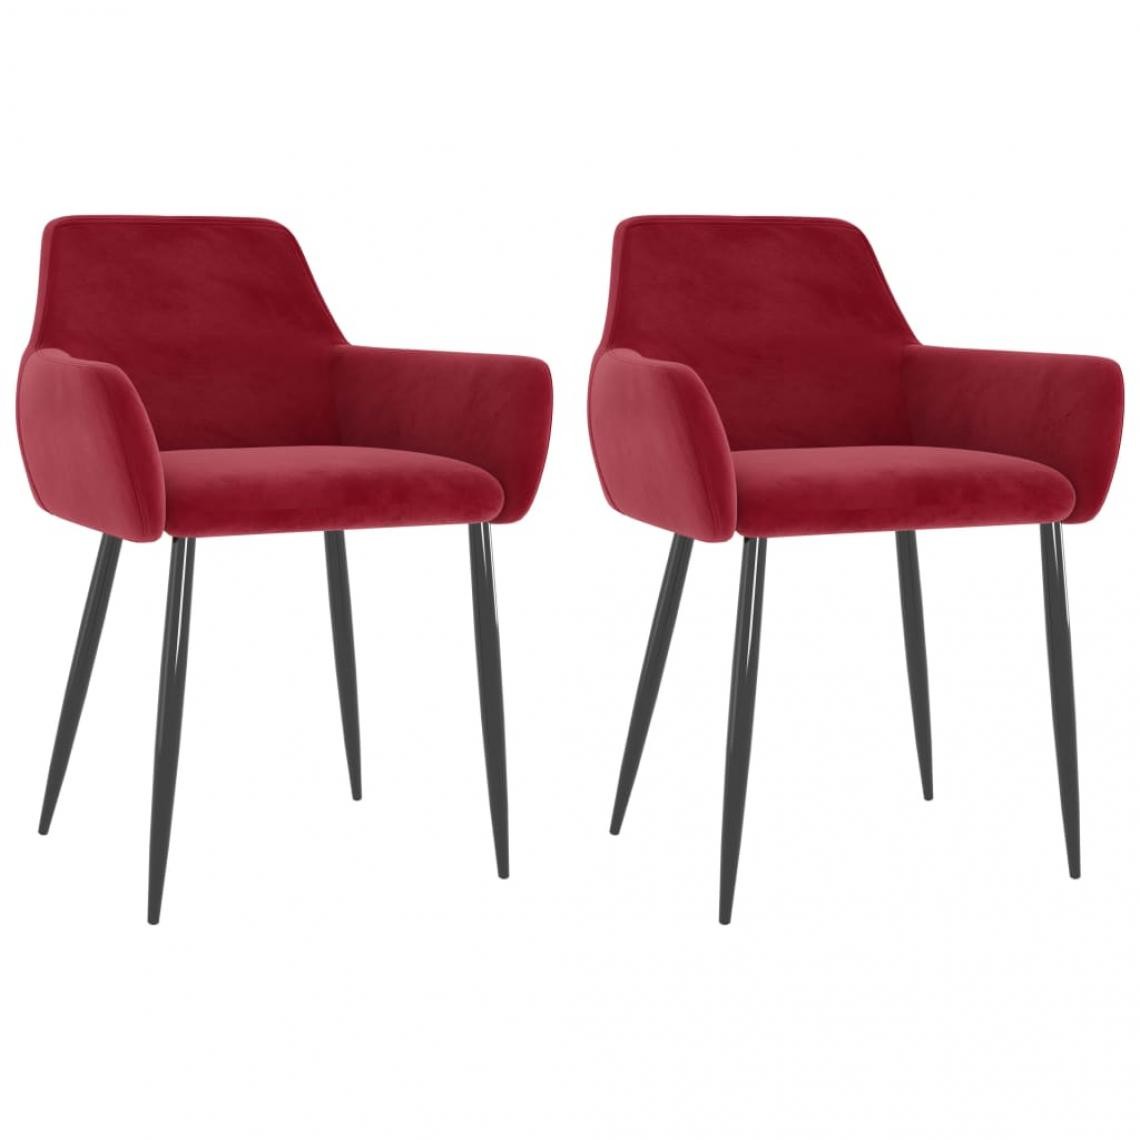 Decoshop26 - Lot de 2 chaises de salle à manger cuisine design moderne velours rouge bordeaux CDS021016 - Chaises